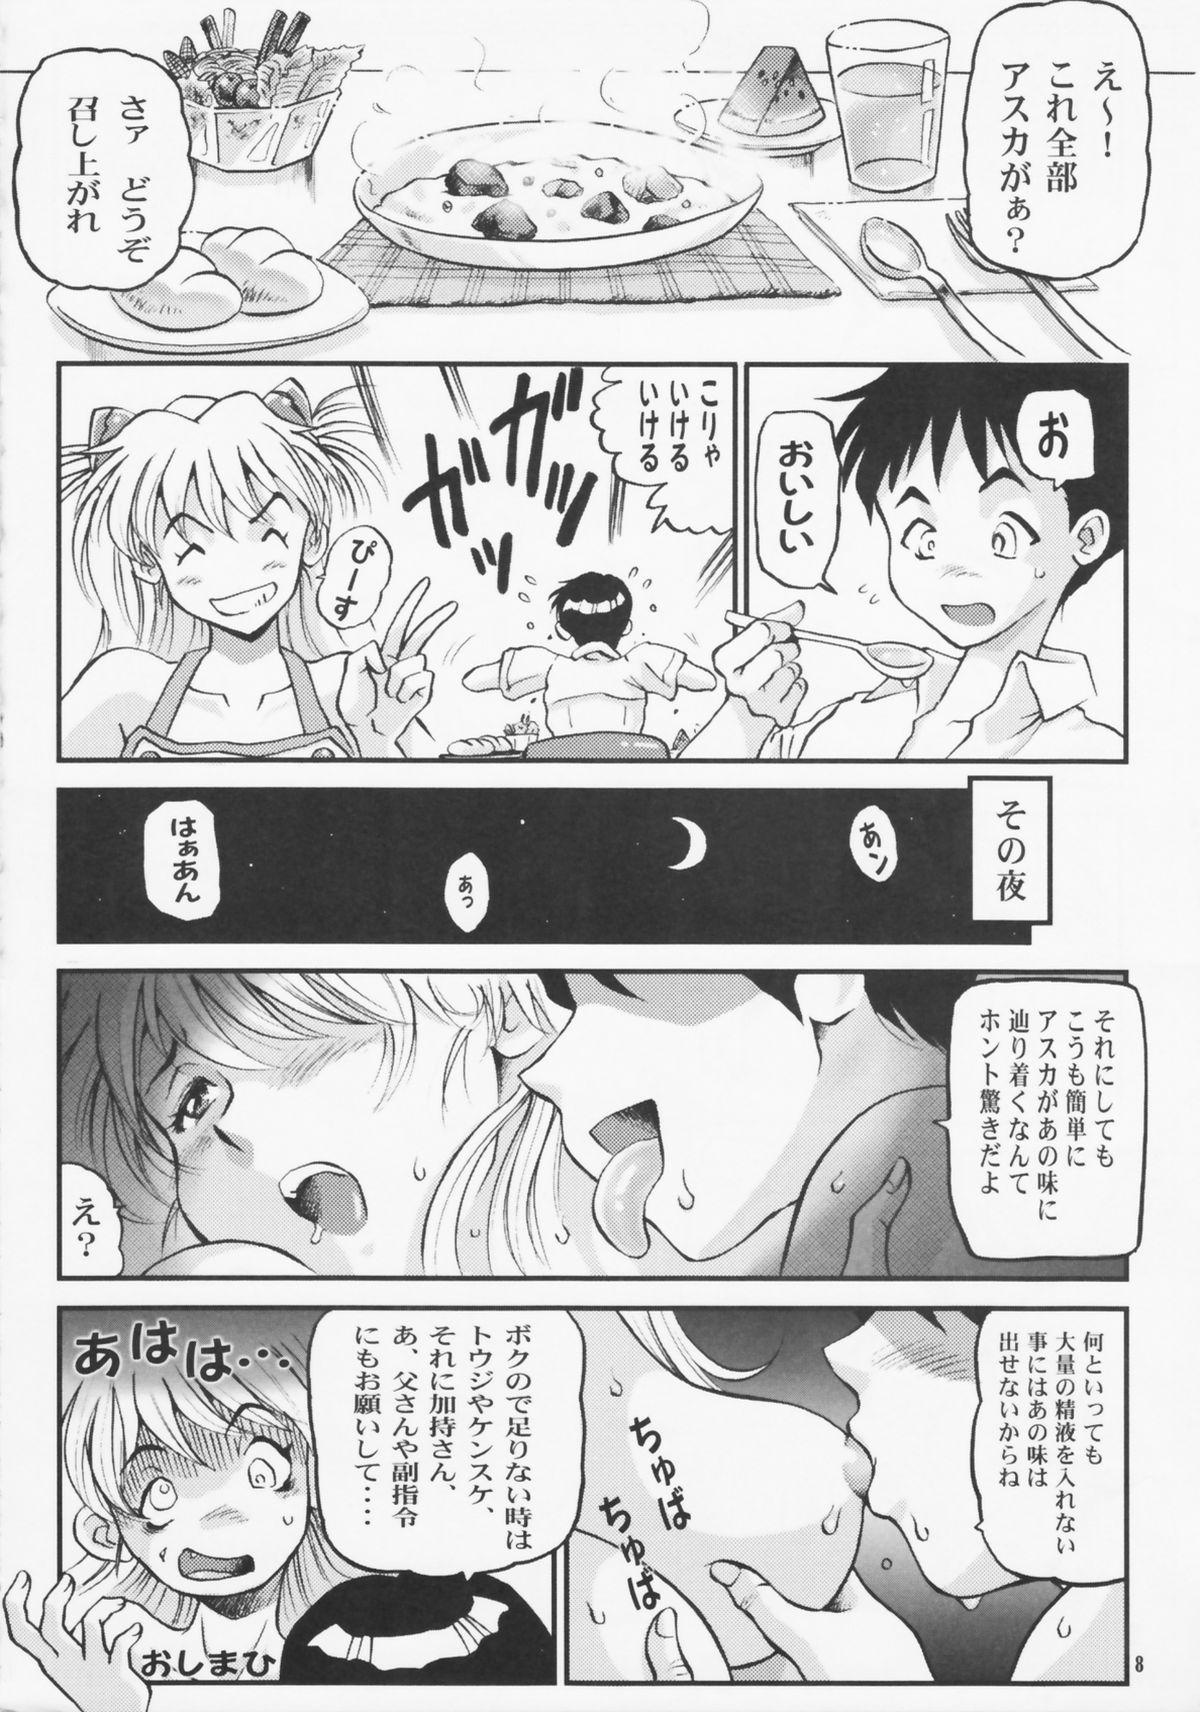 Gay Twinks Shin Han-juuryoku XXII - Neon genesis evangelion Pokemon Deepthroat - Page 8